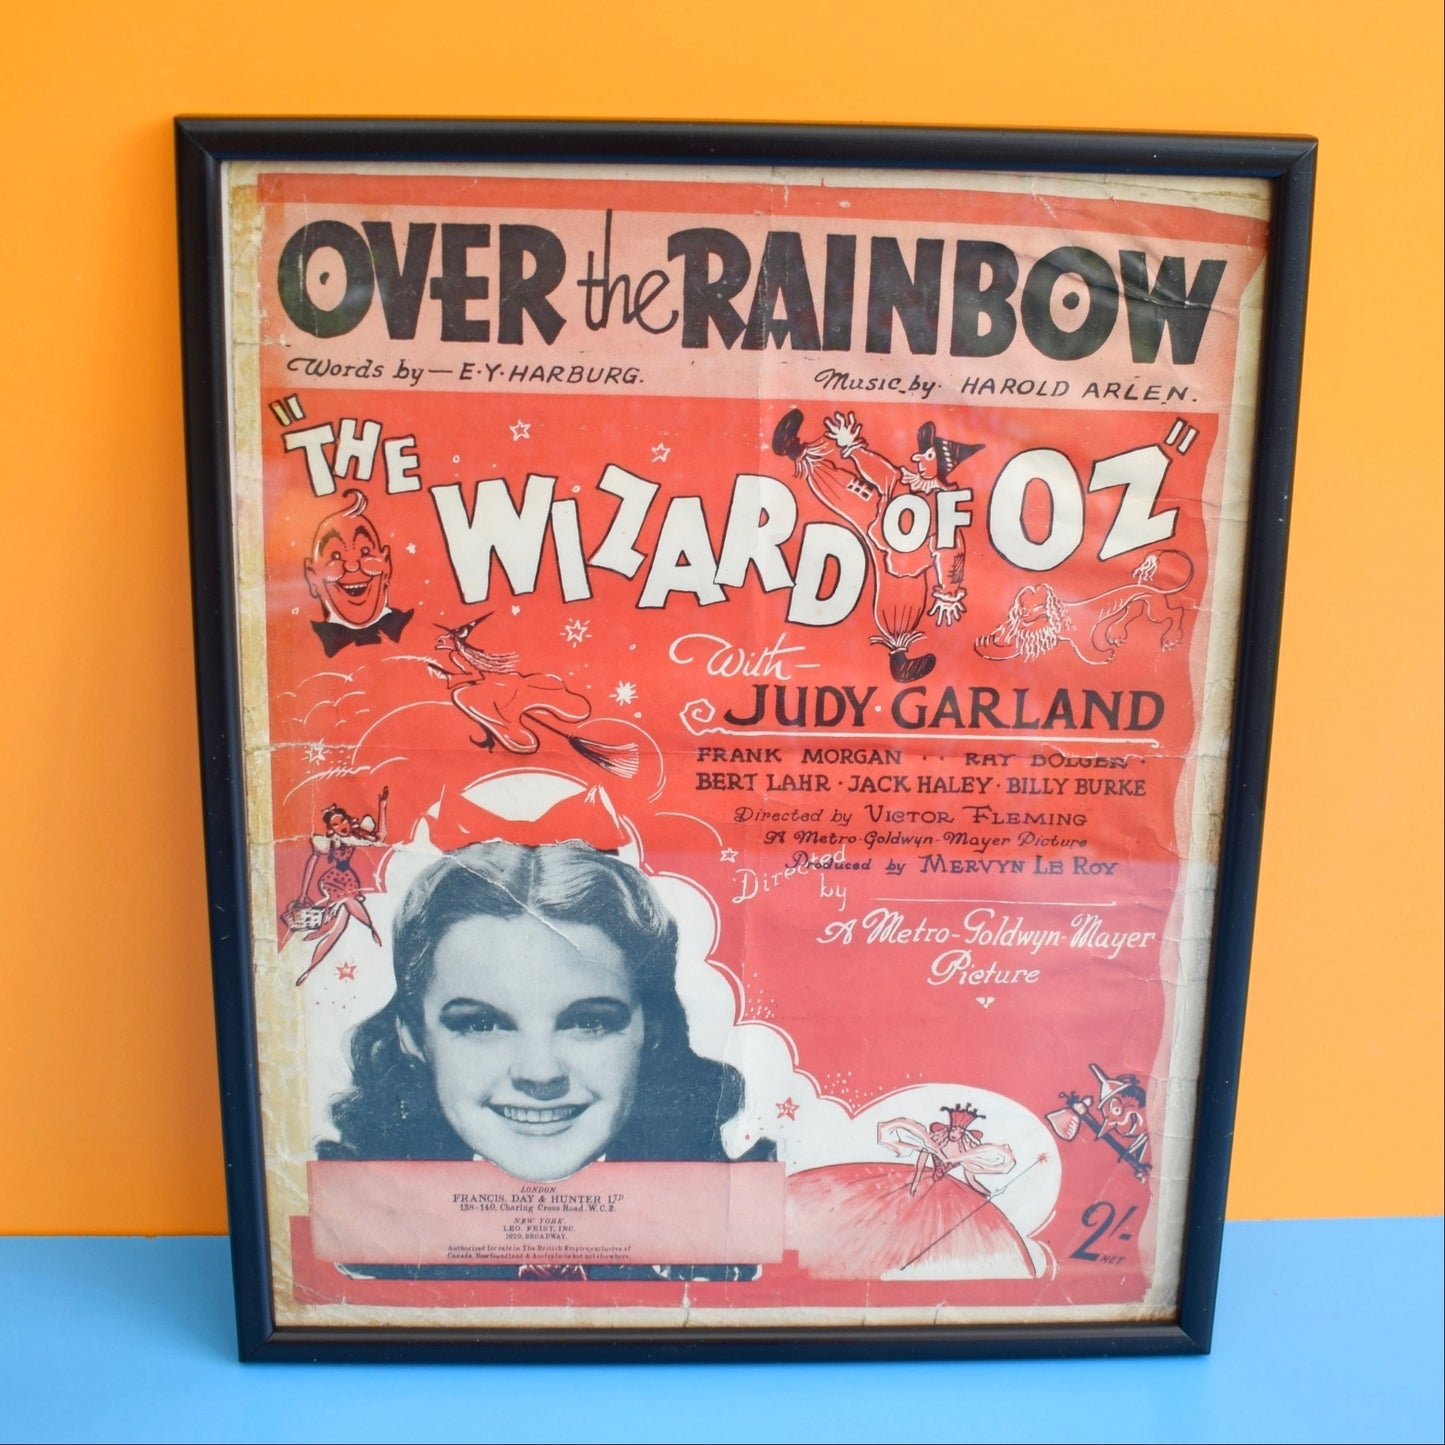 Vintage 1940s Music Sheet - Wizard Of Oz - Framed